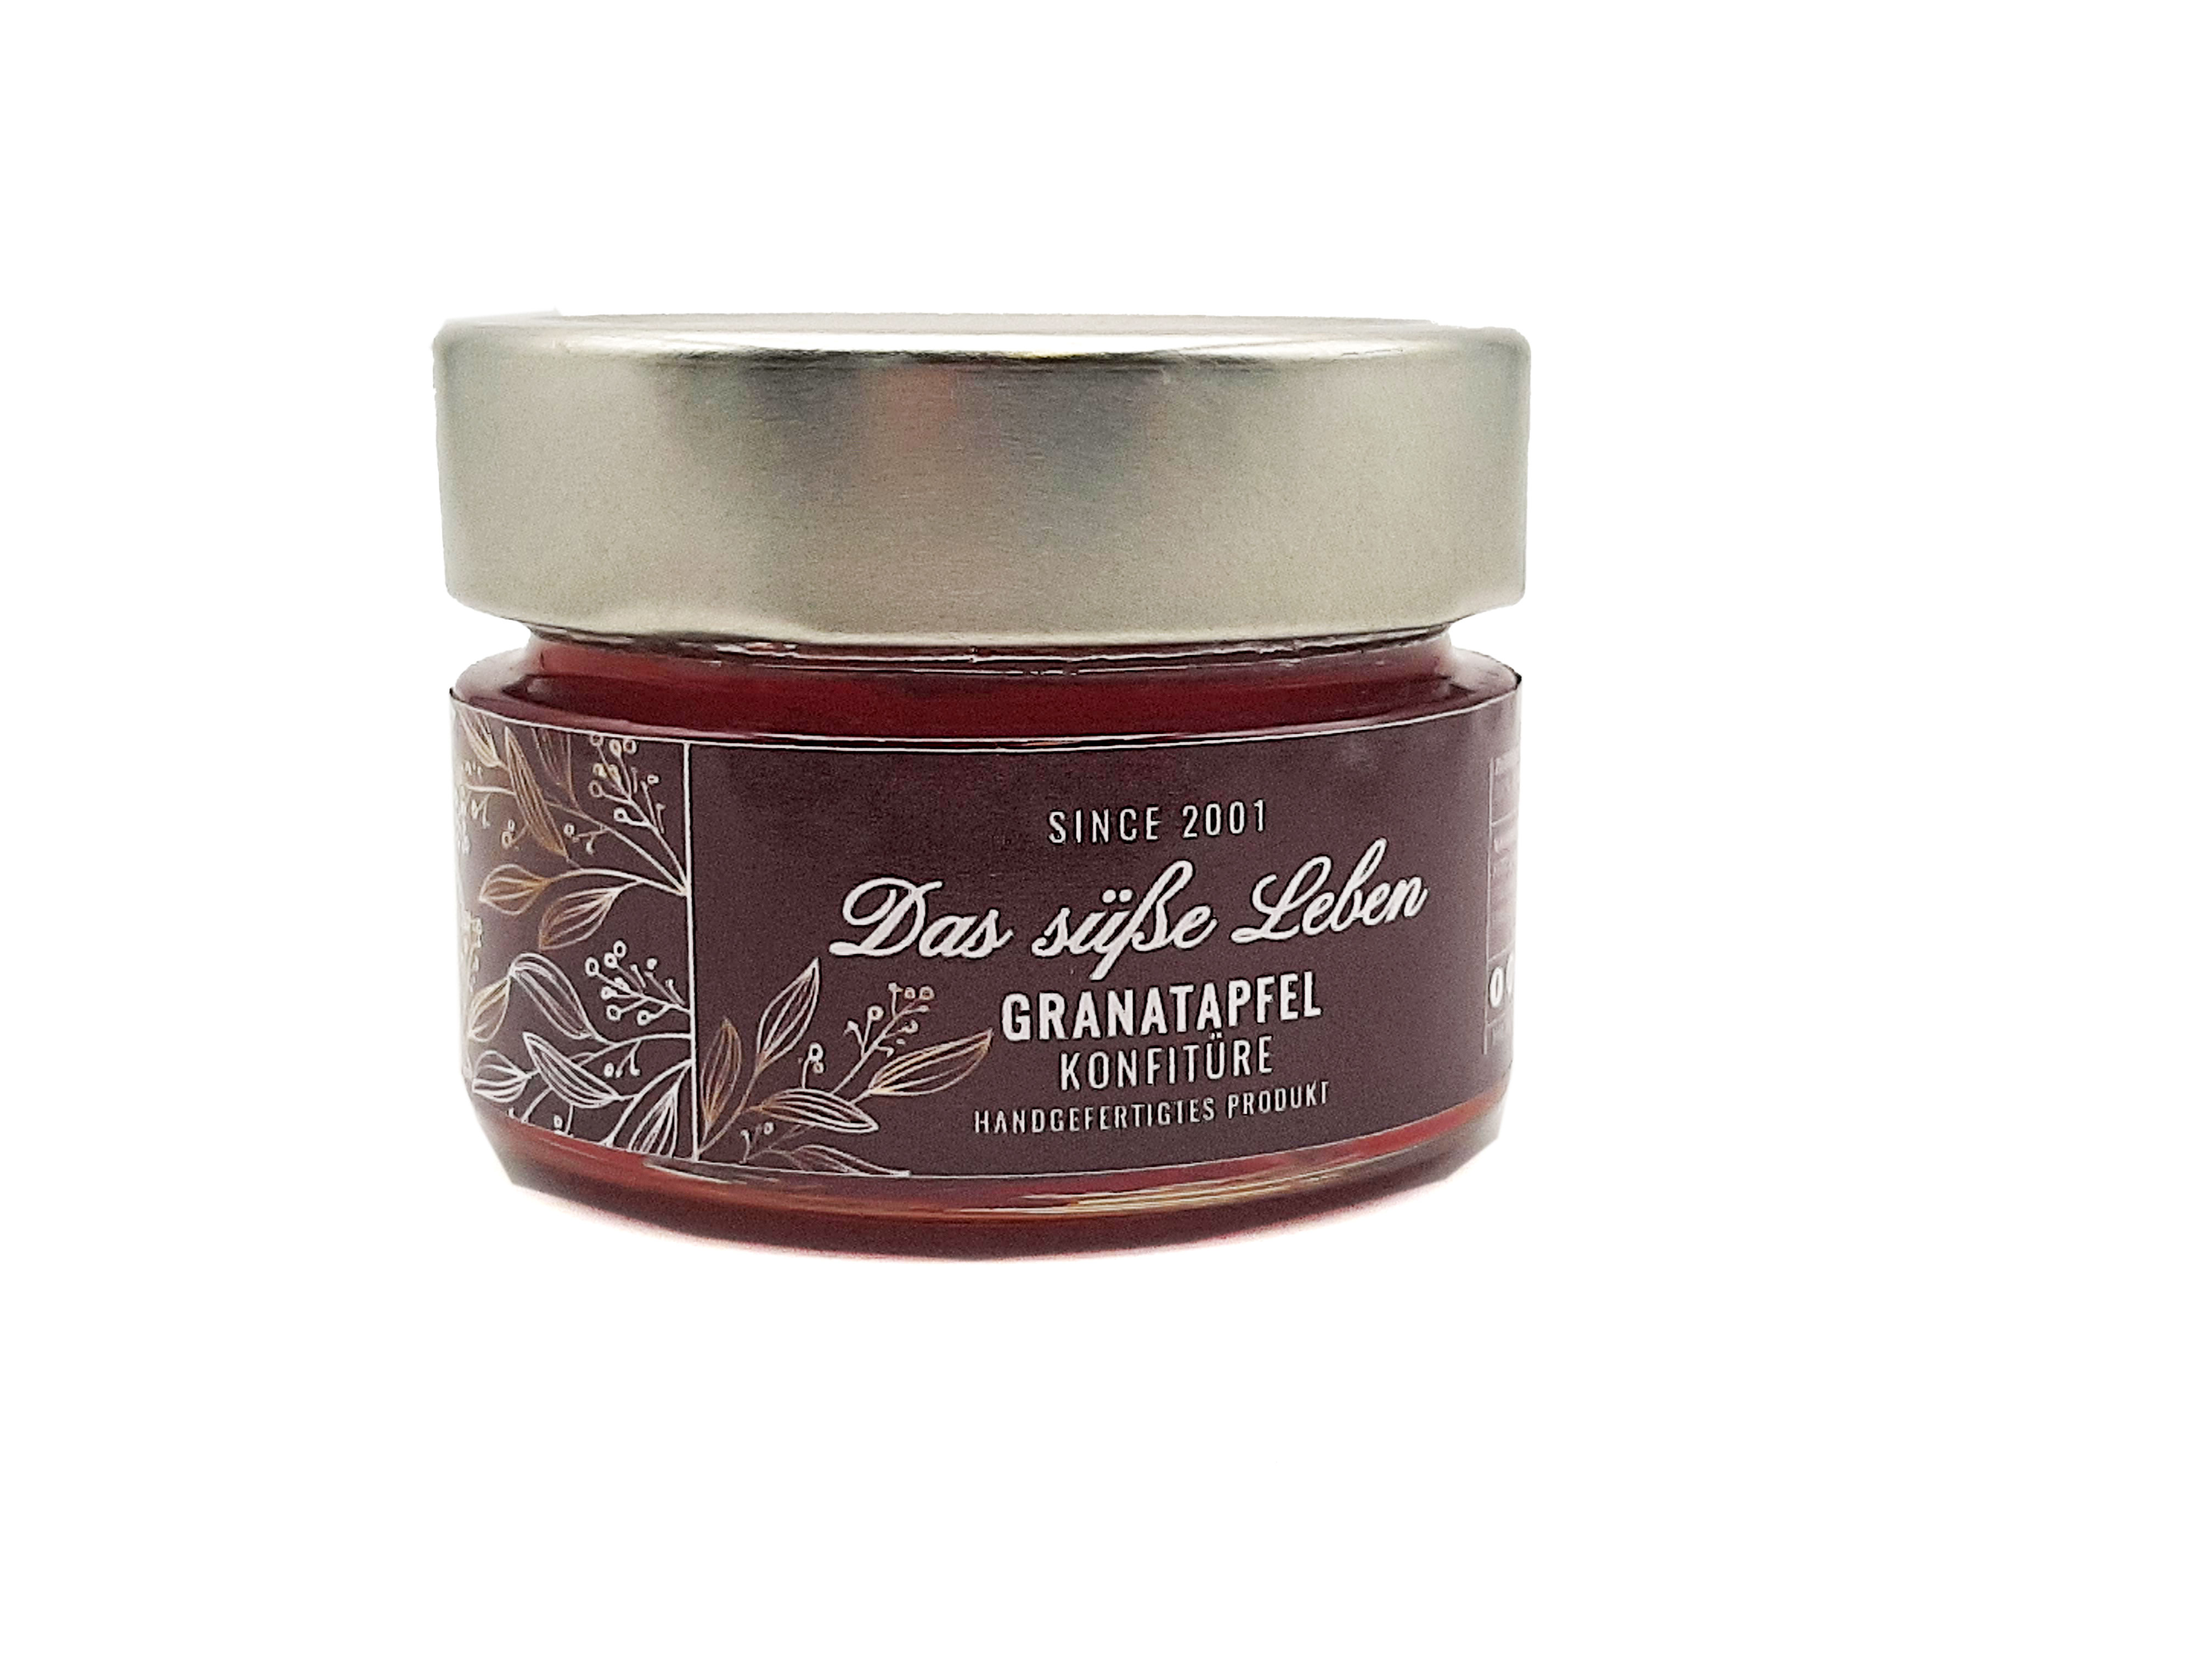 Das süße Leben Granatapfel Konfitüre 100g